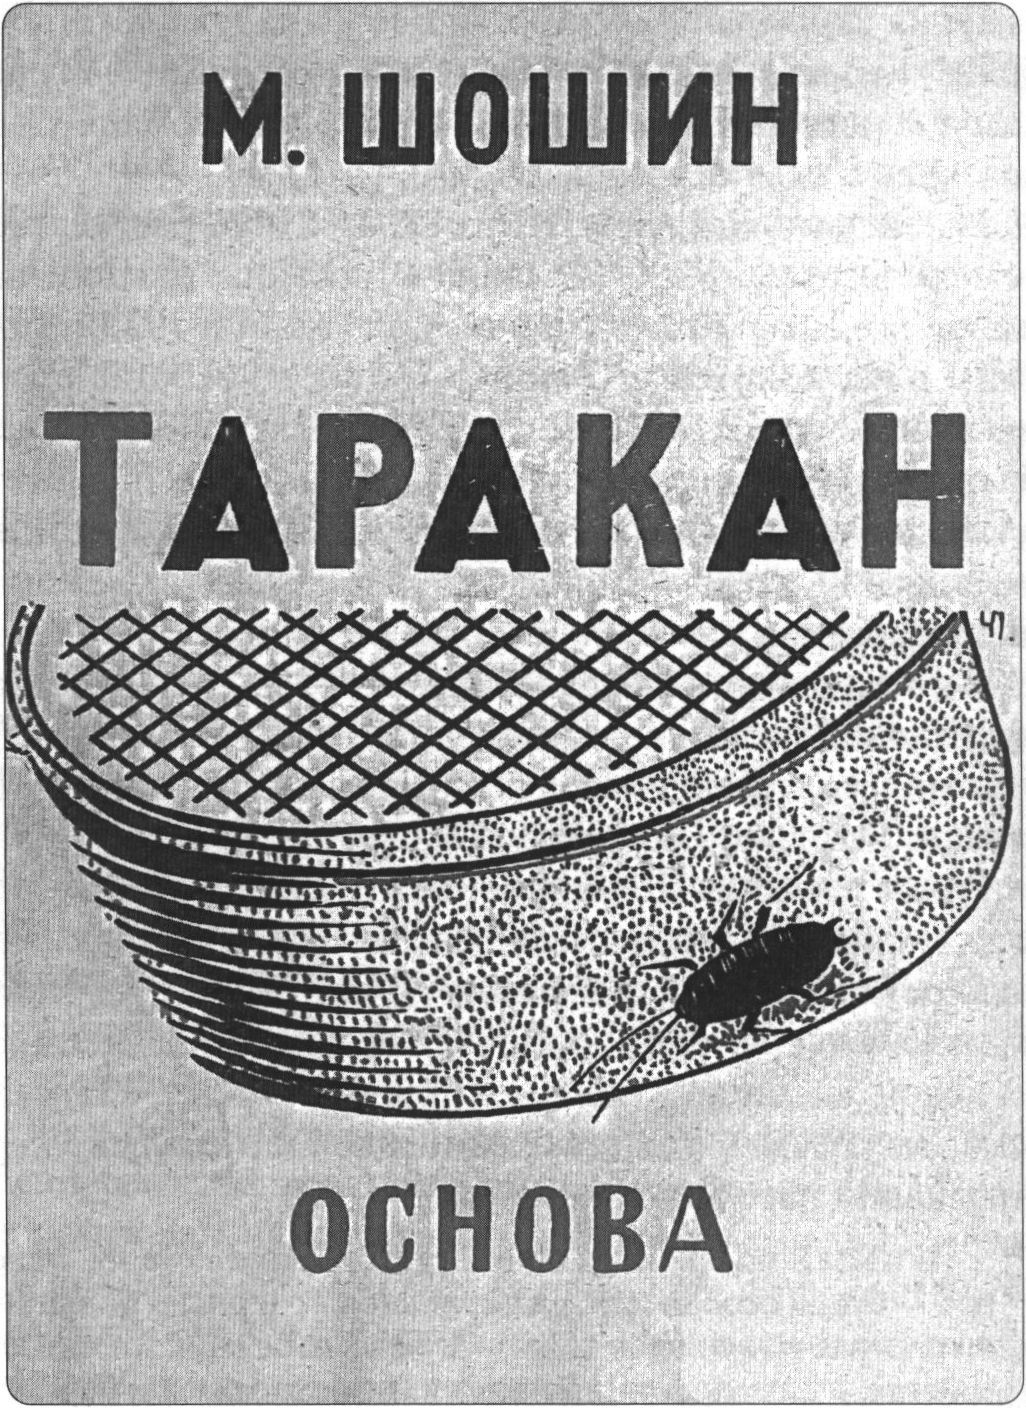 Обложка книги М.Д. Шошина «Таракан» (1925)